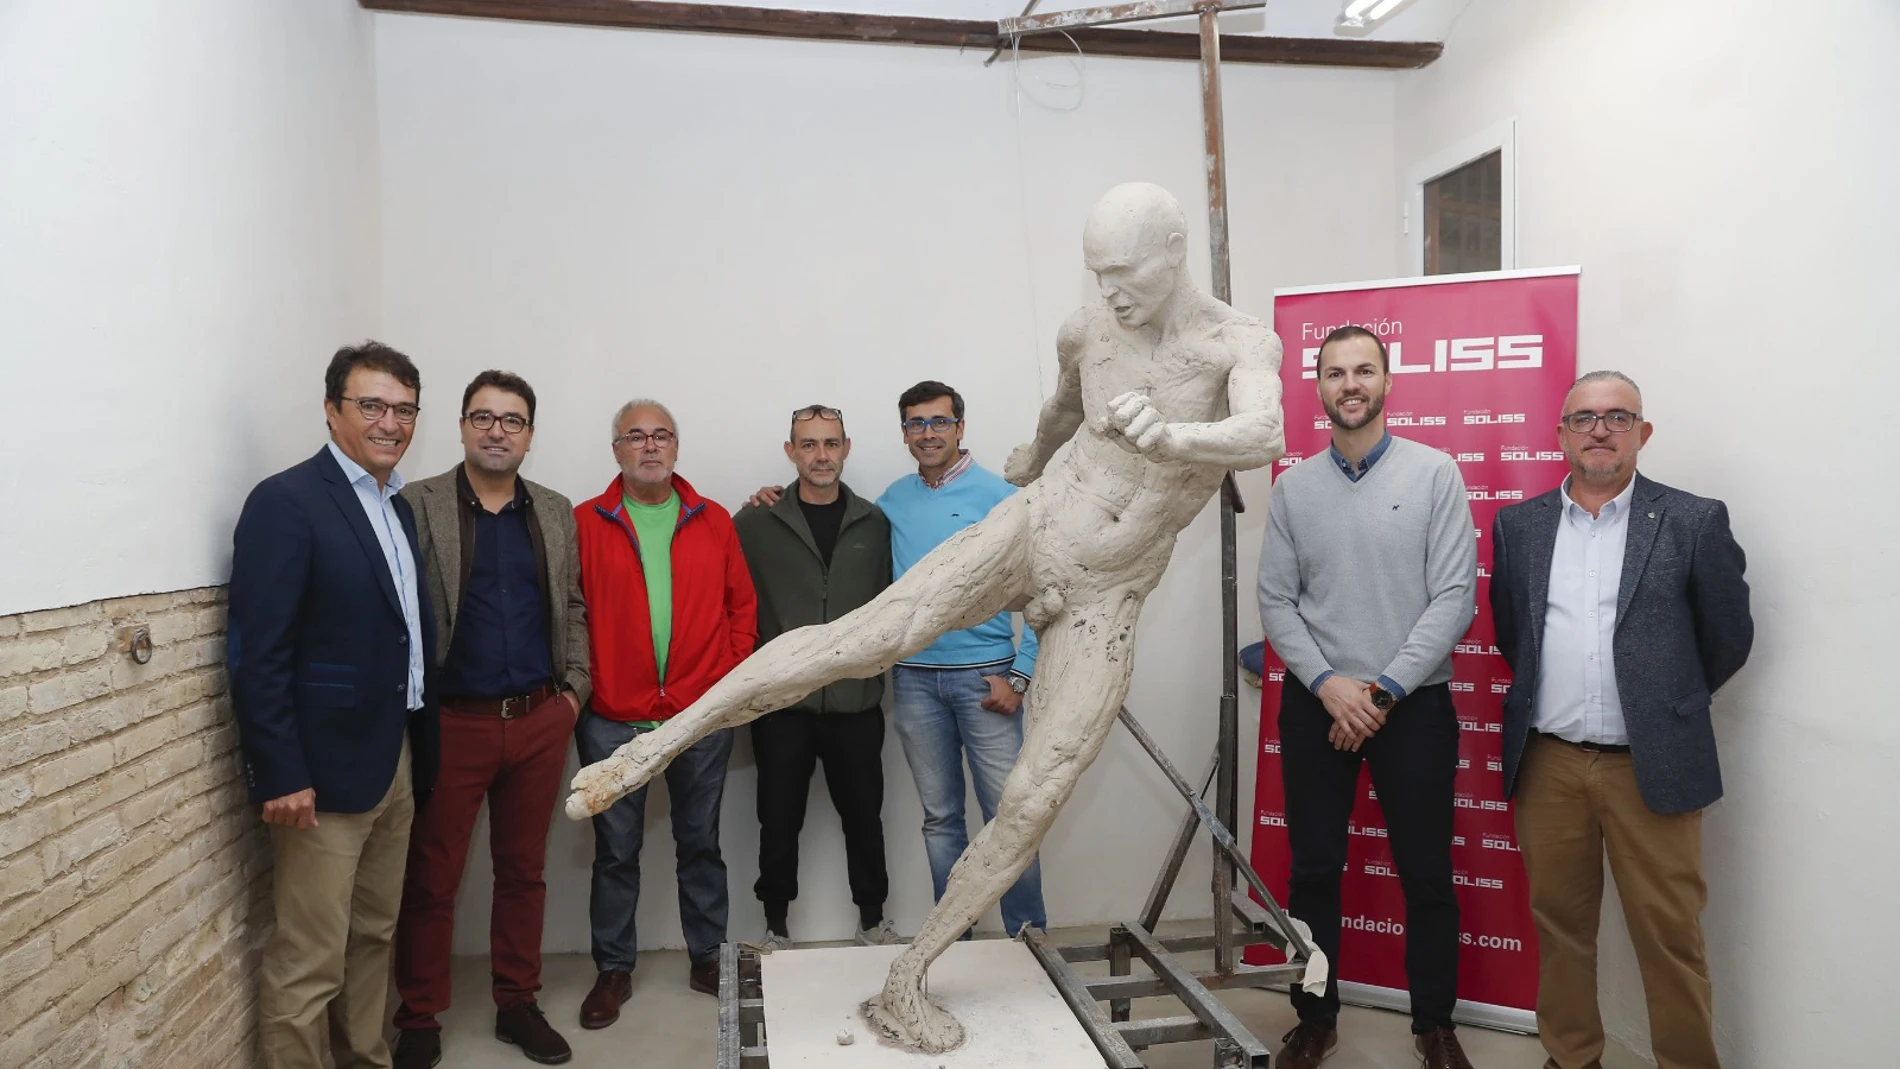 Estatua de Andrés Iniesta en Albacete